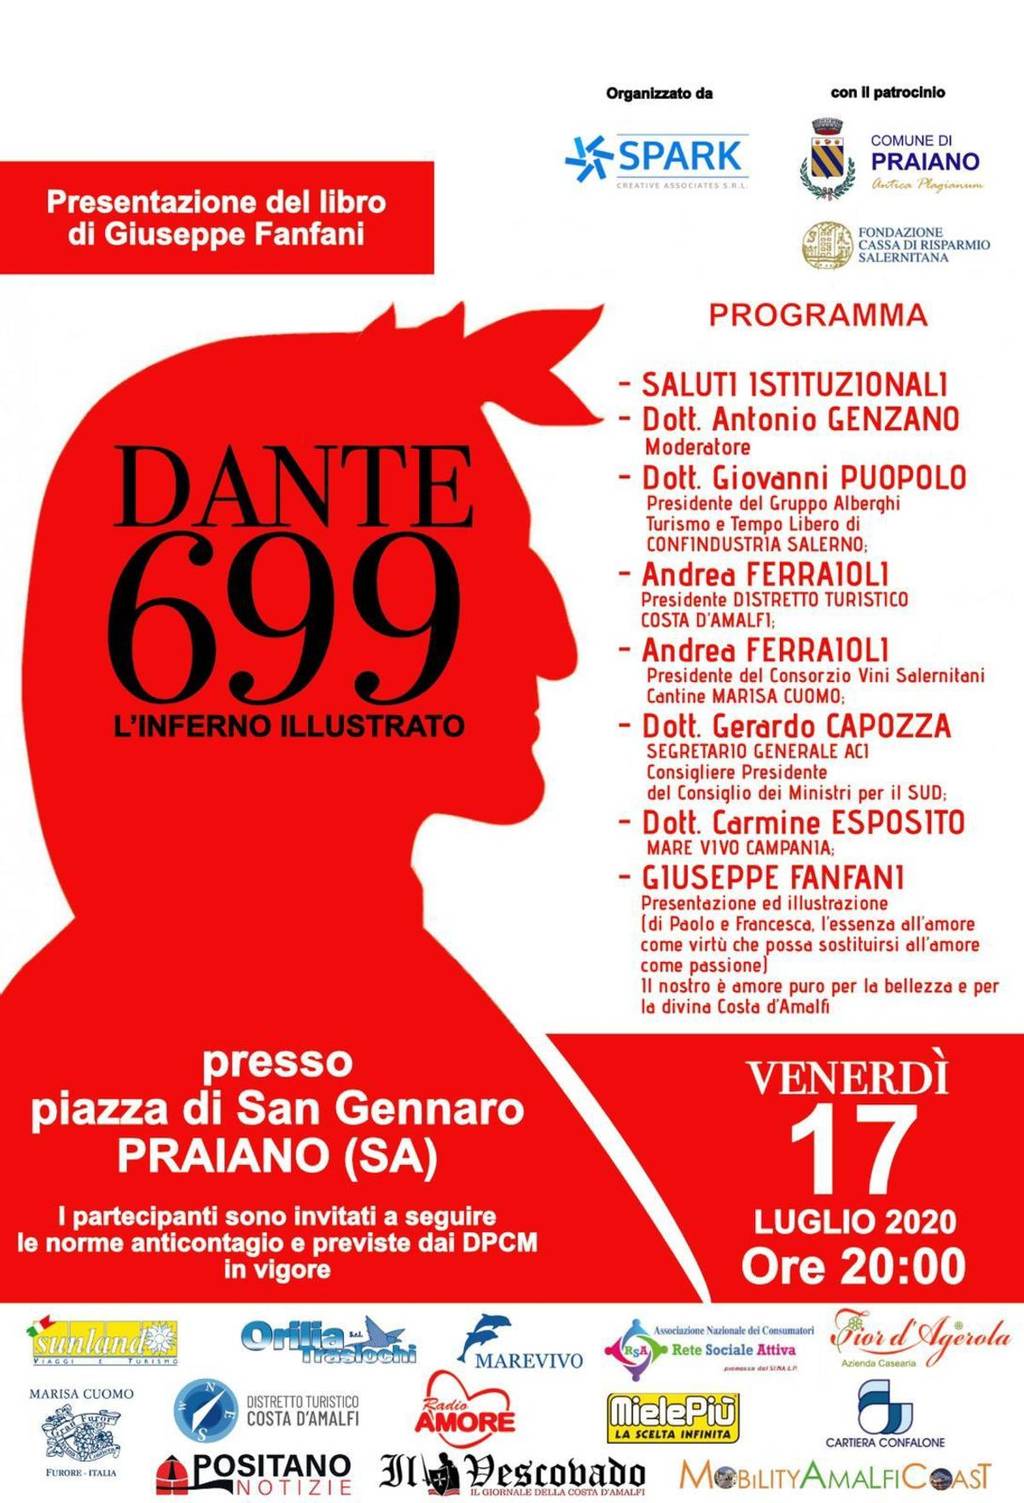 Dante 699. L'Inferno illustrato.